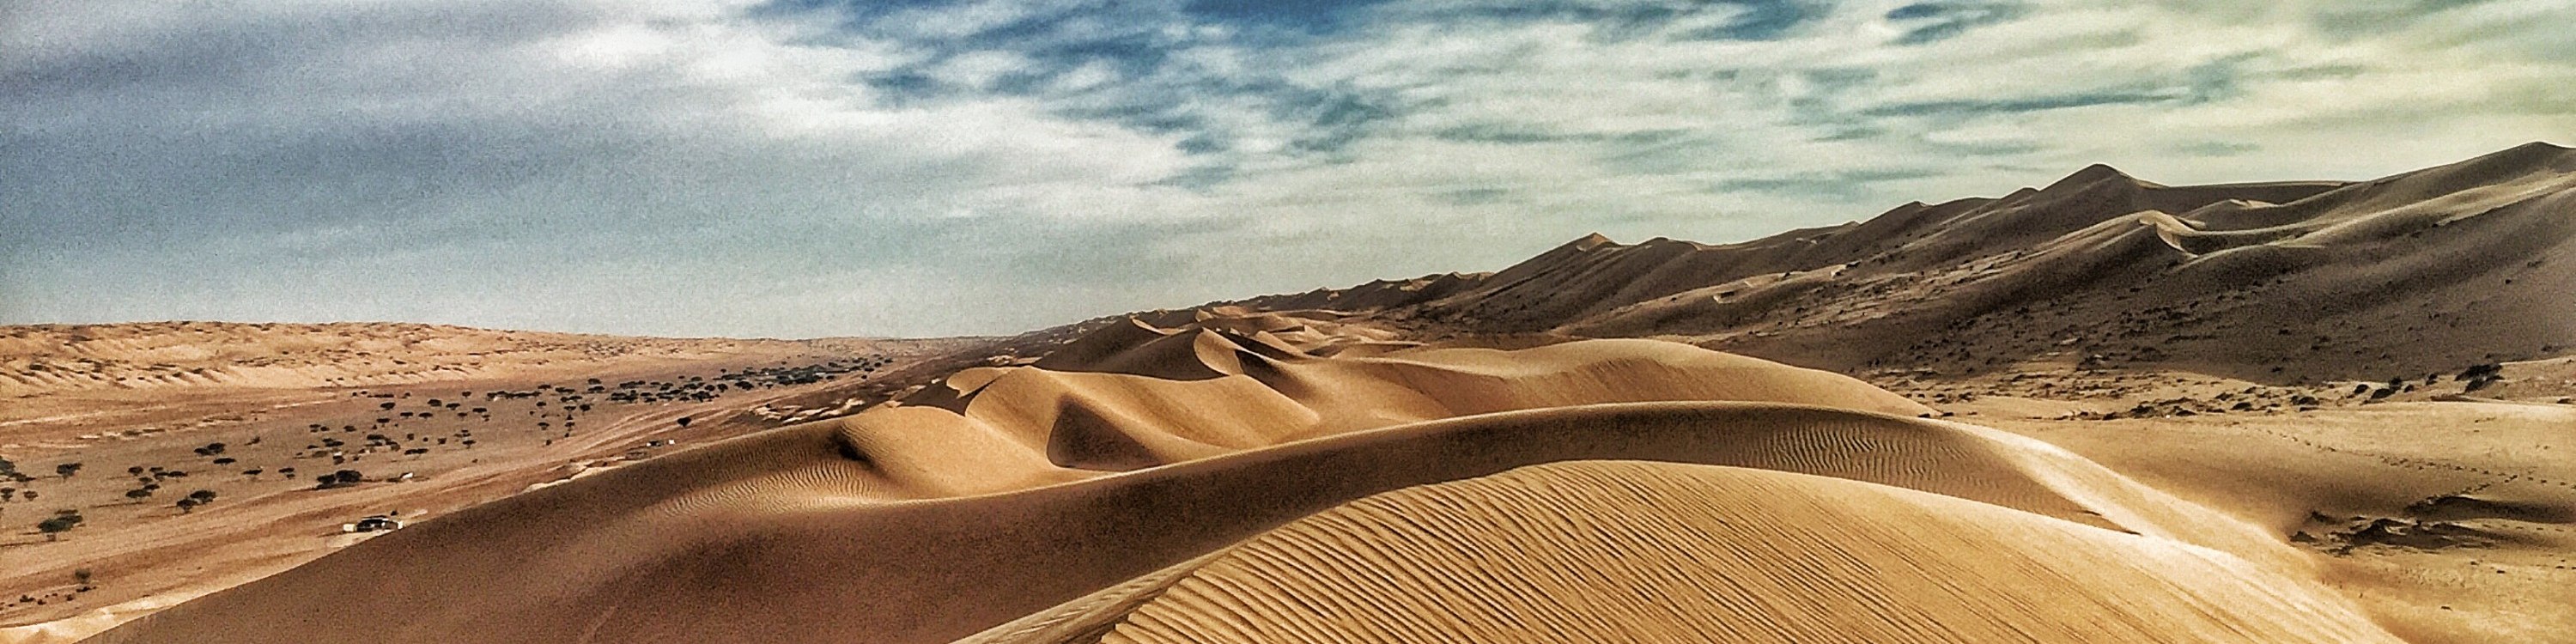 Wadi Bani Khalid & Wahiba沙漠之旅